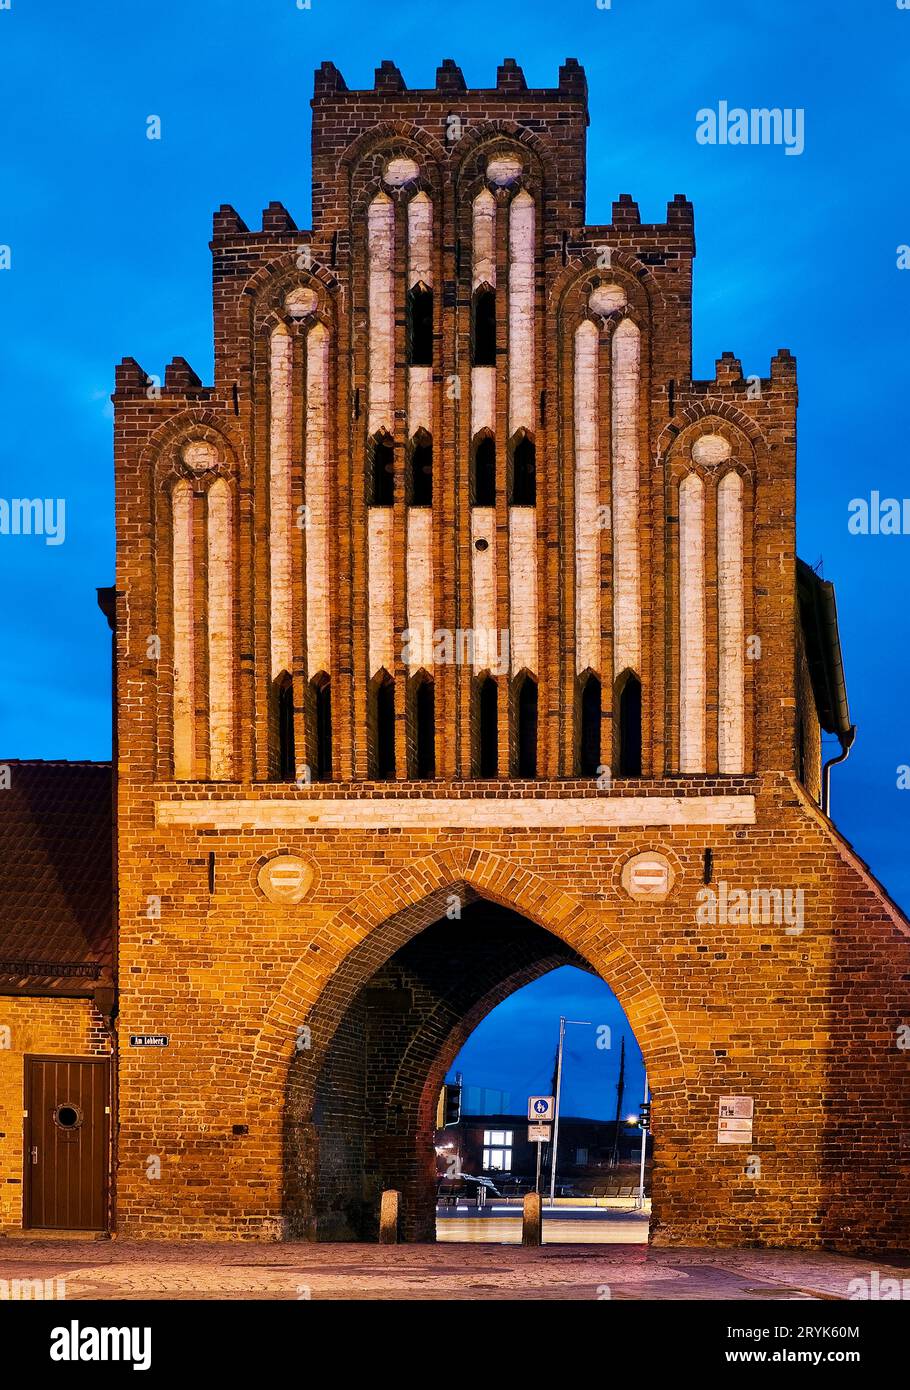 Wassertor, porta del porto in stile gotico mattone la sera, Wismar, Germania, Europa Foto Stock